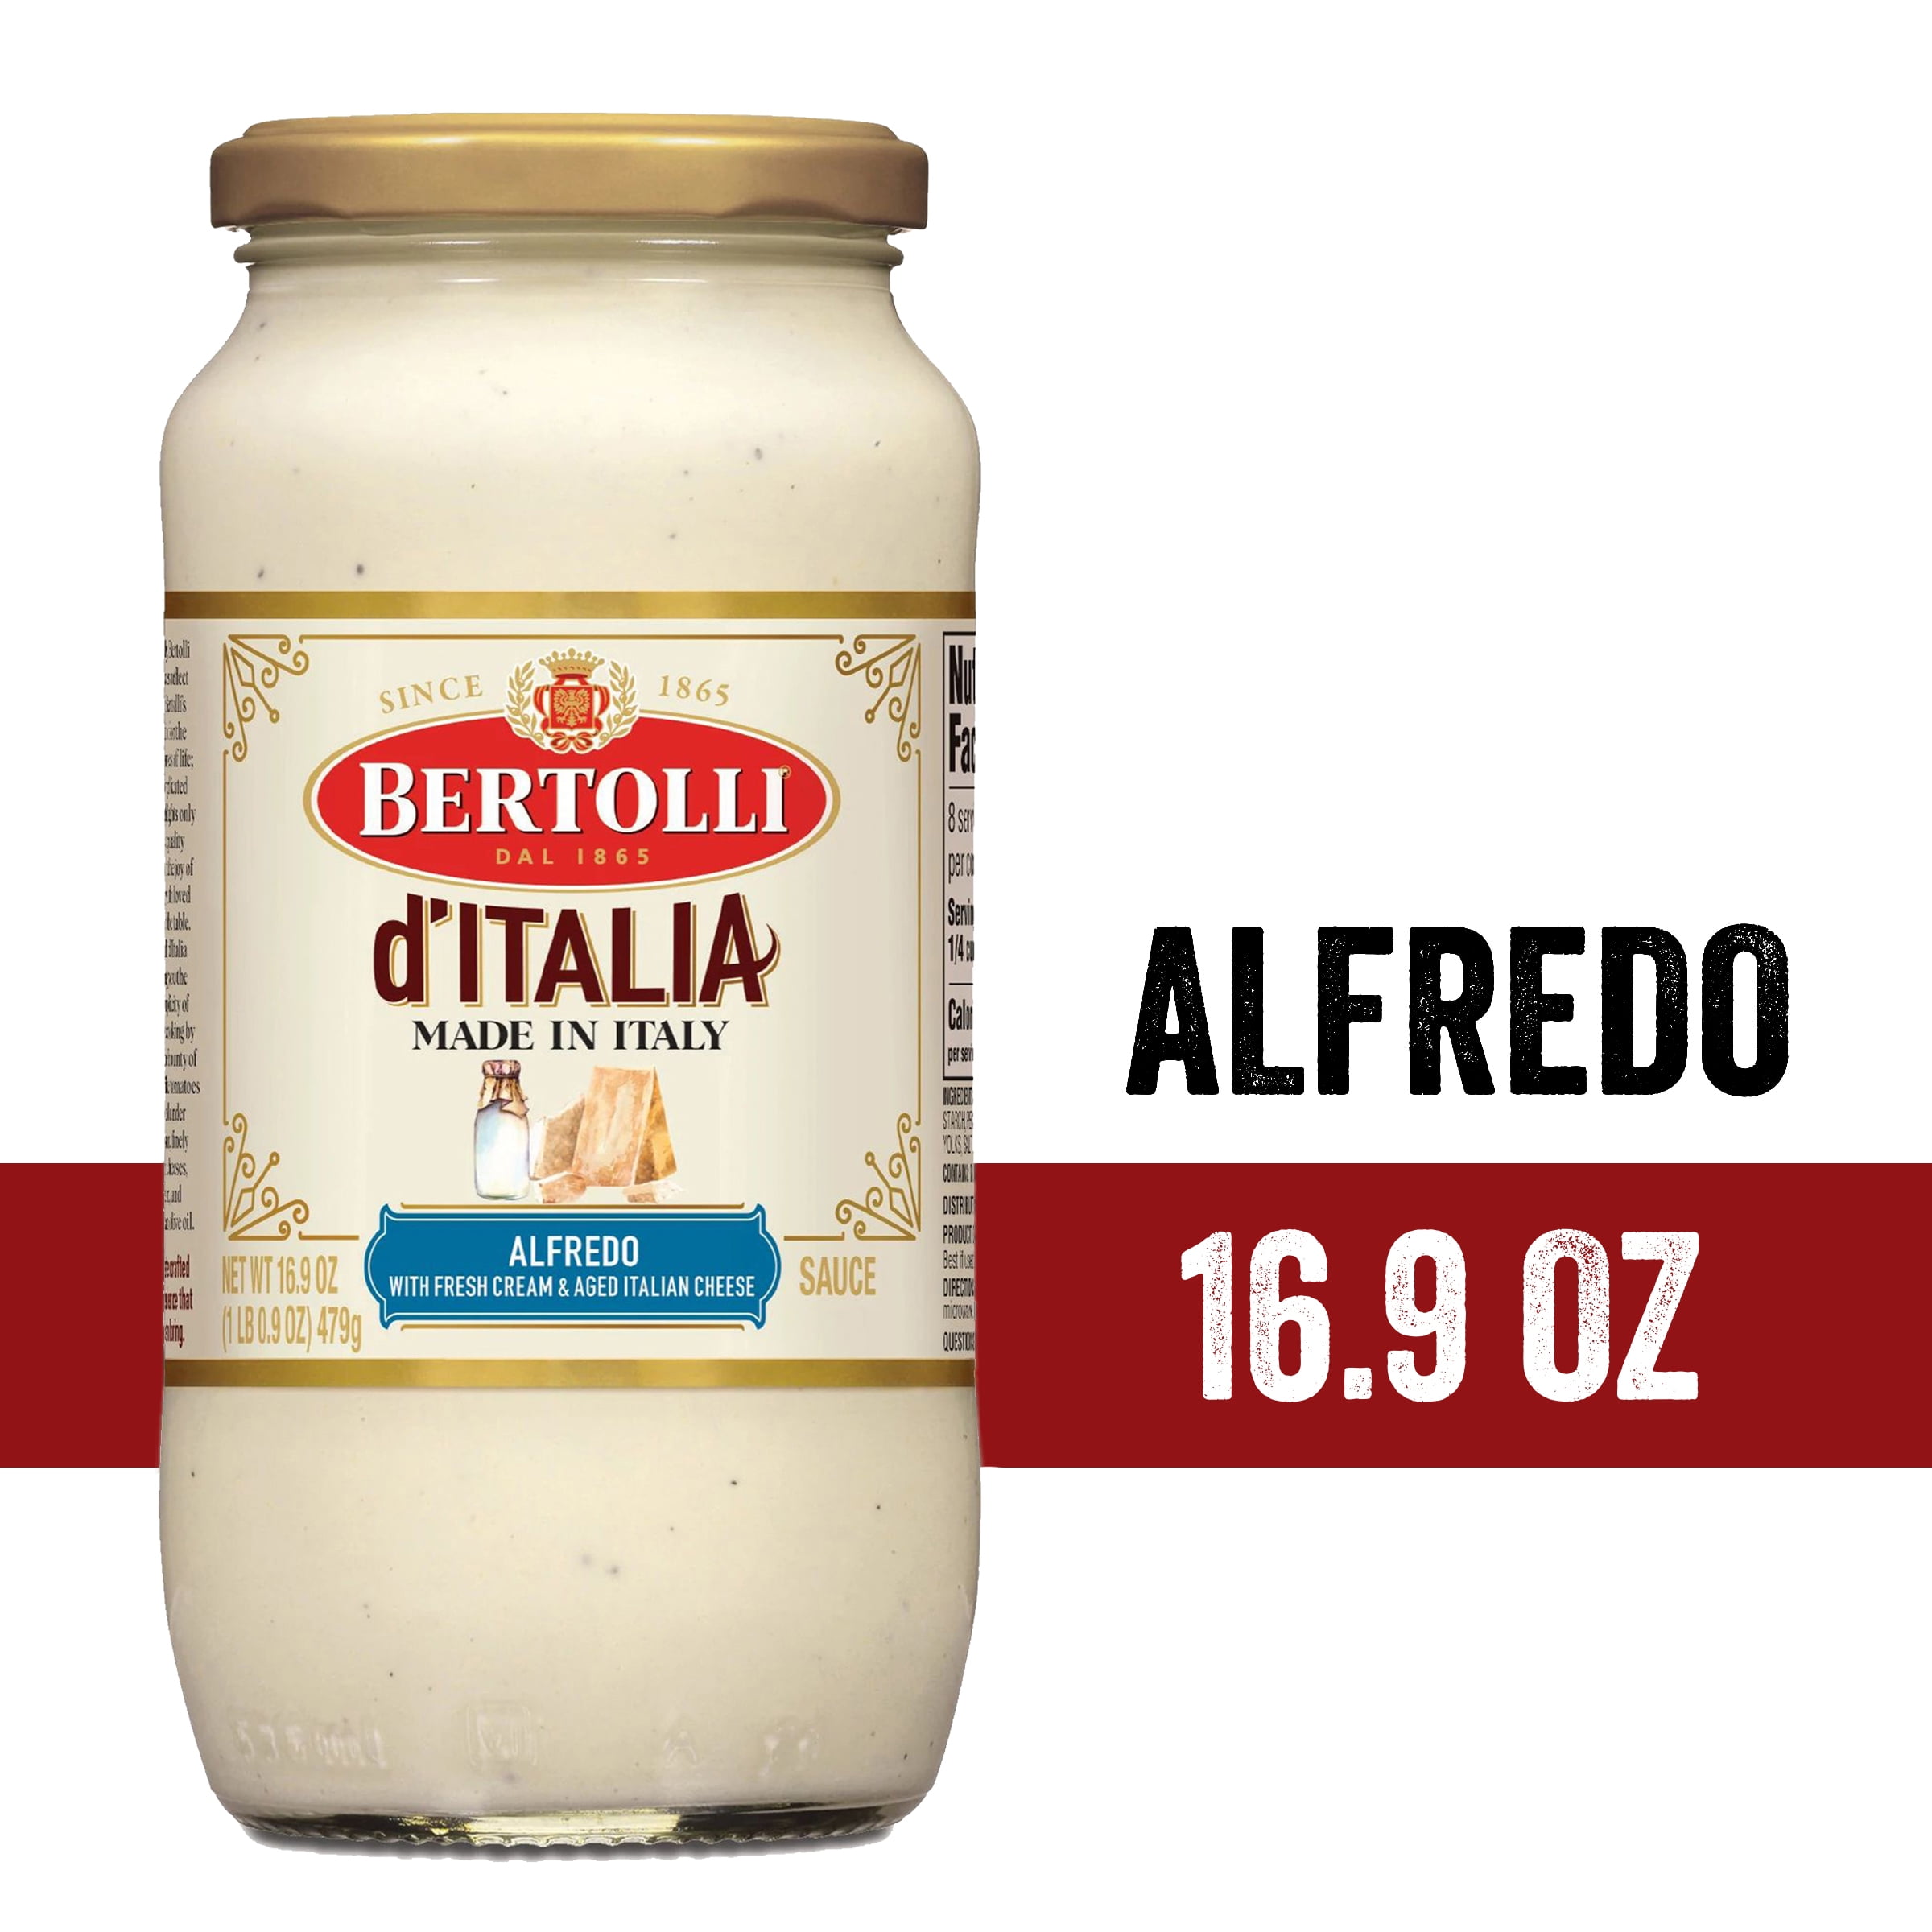 Rotella Taglia Pasta in Ottone Festonata - Coltelleria Gianola - Think Big,  Buy Small!